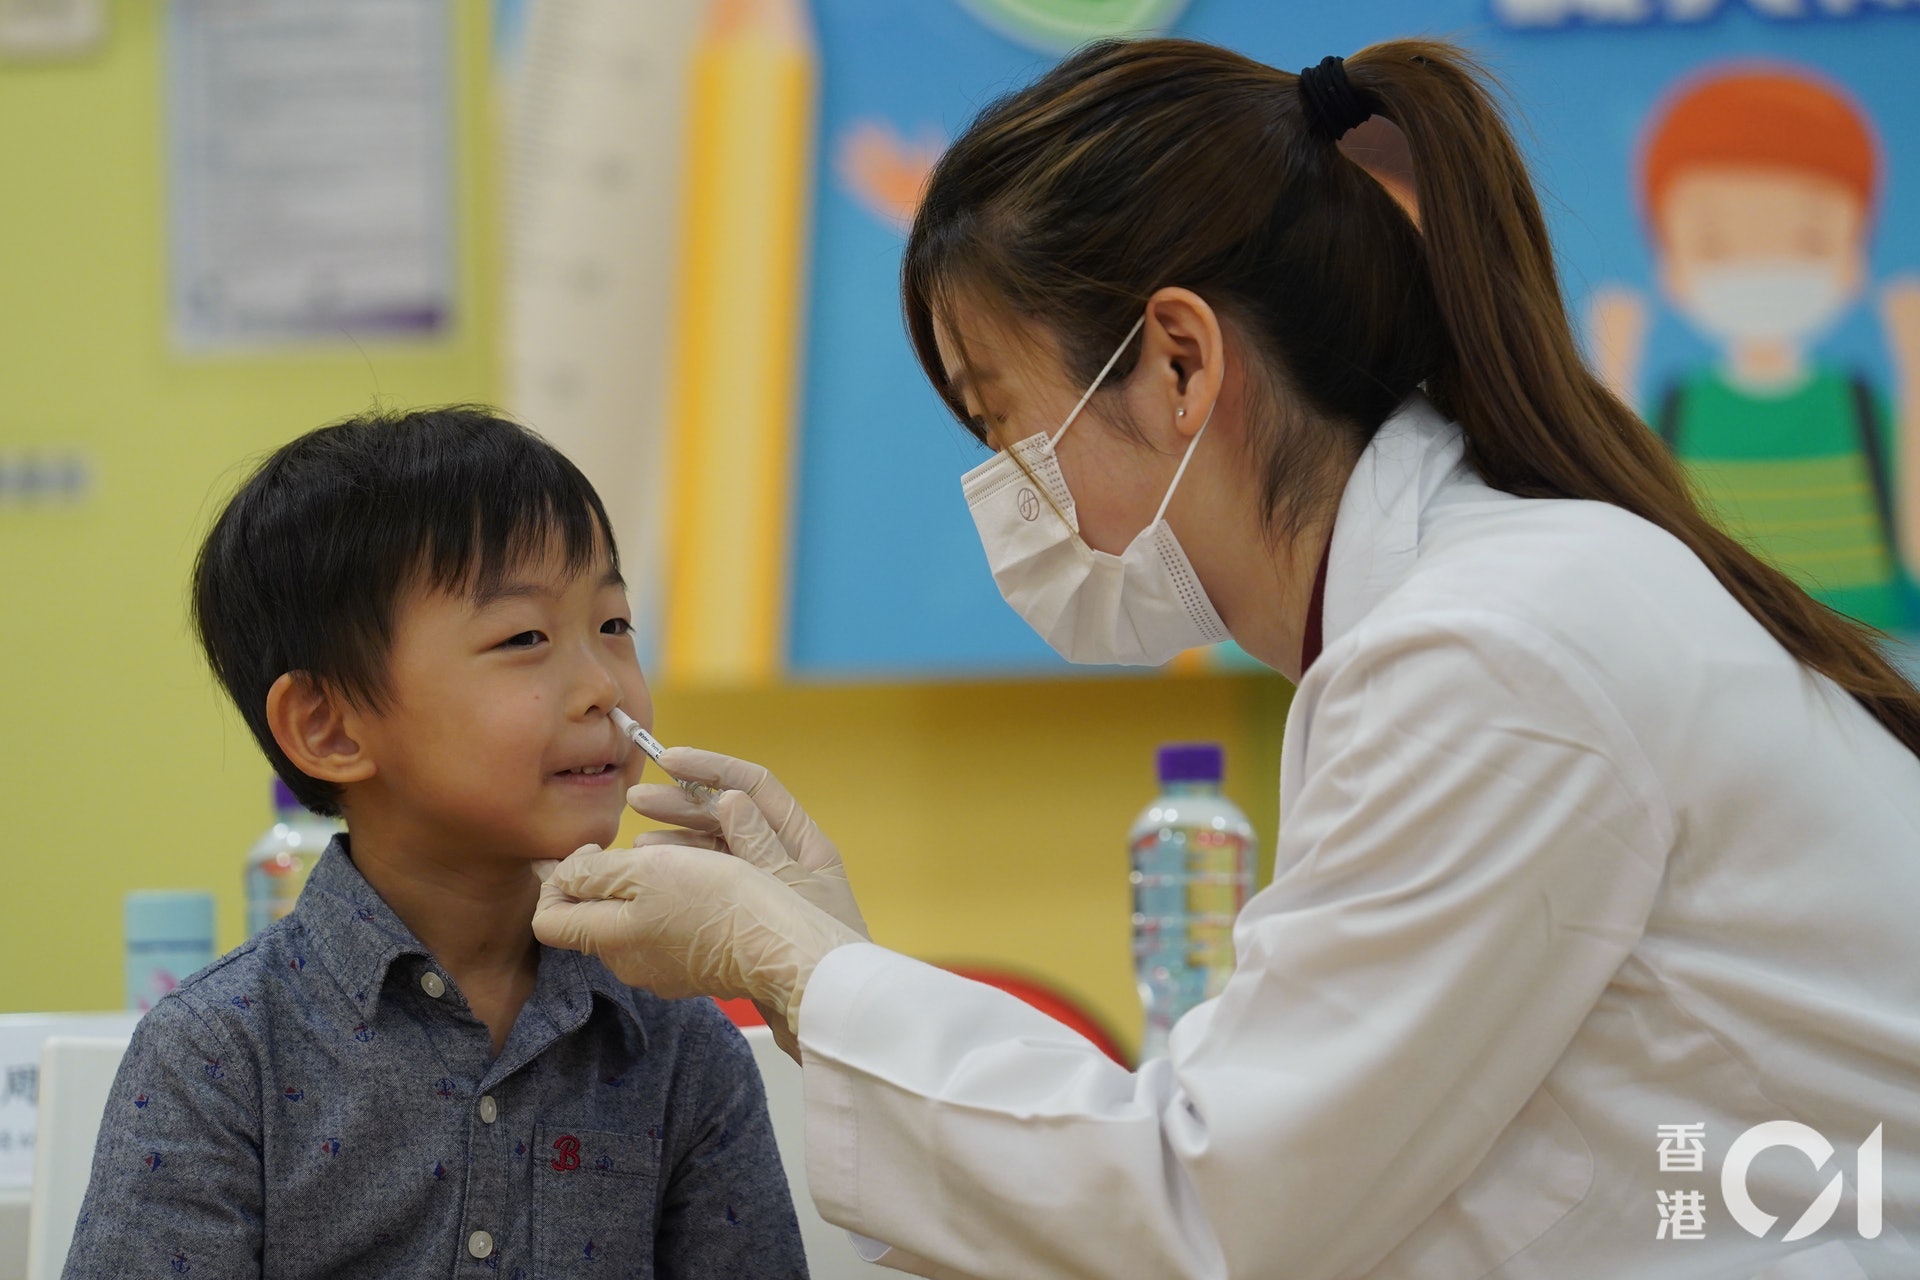 如小朋友對打針極其抗拒、本身又無長期病患，噴鼻式疫苗無疑是另一選擇。(圖片: HK01)